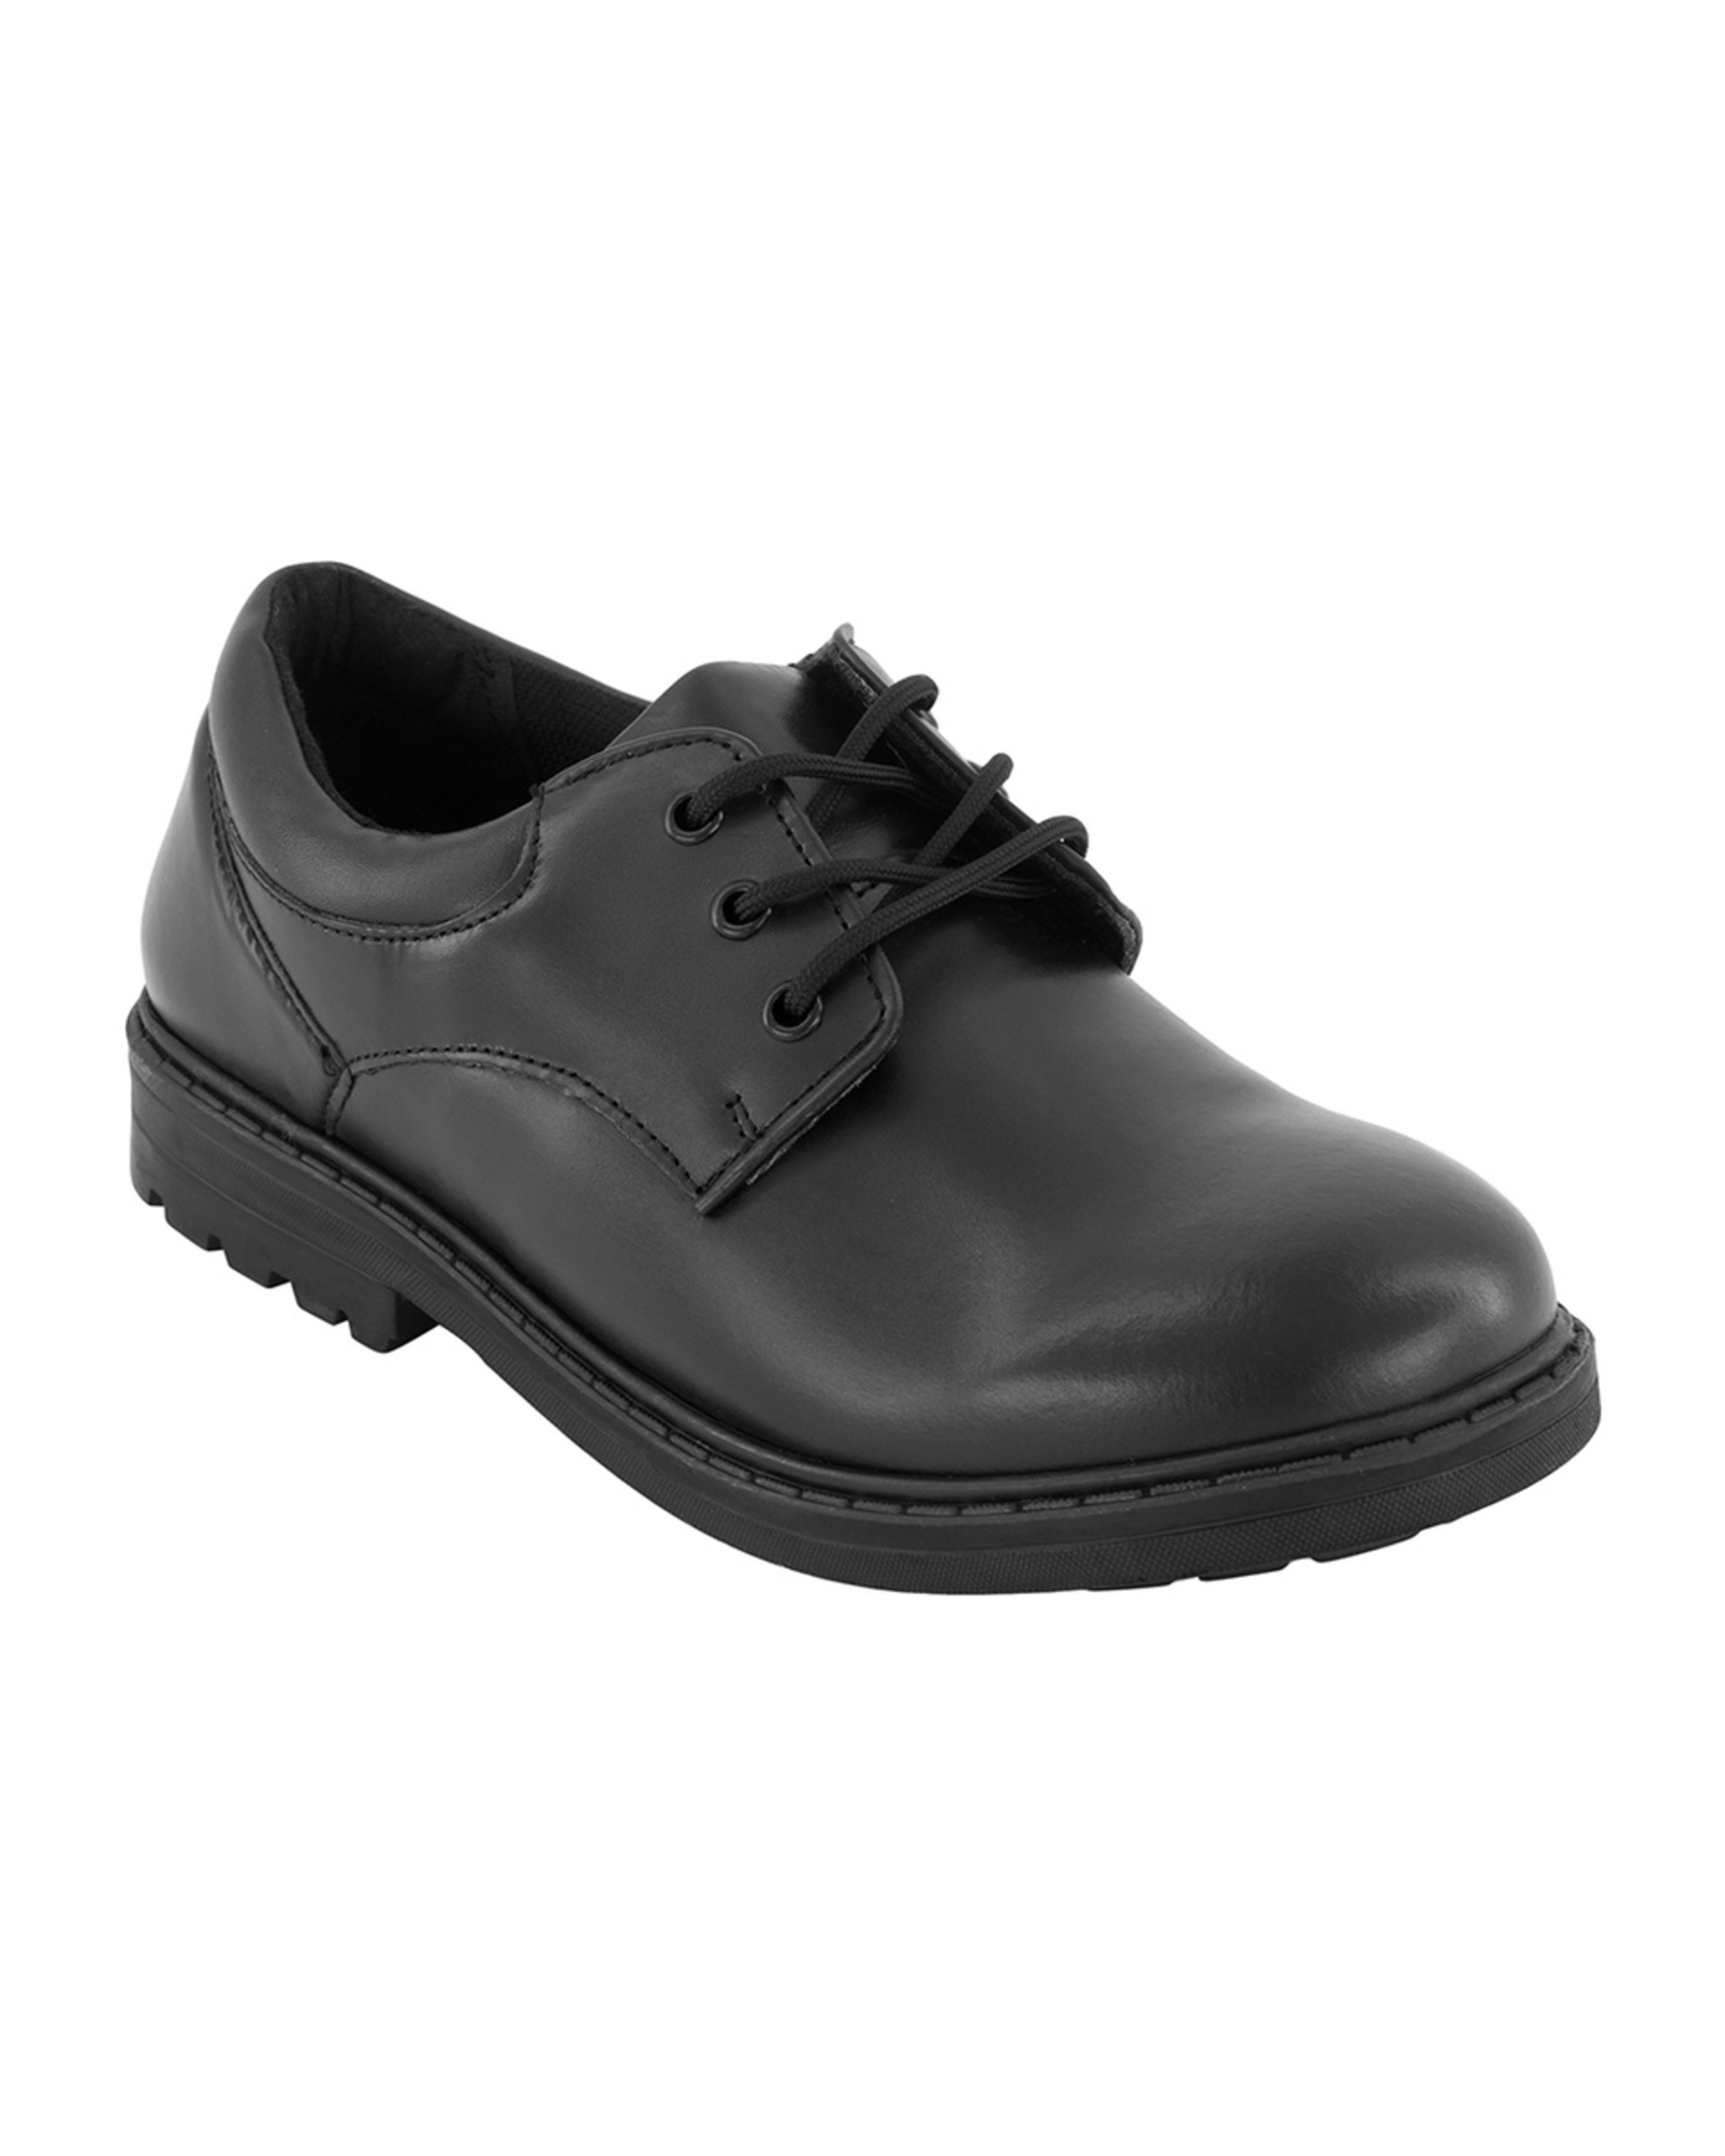 Senior School Shoes - Kmart